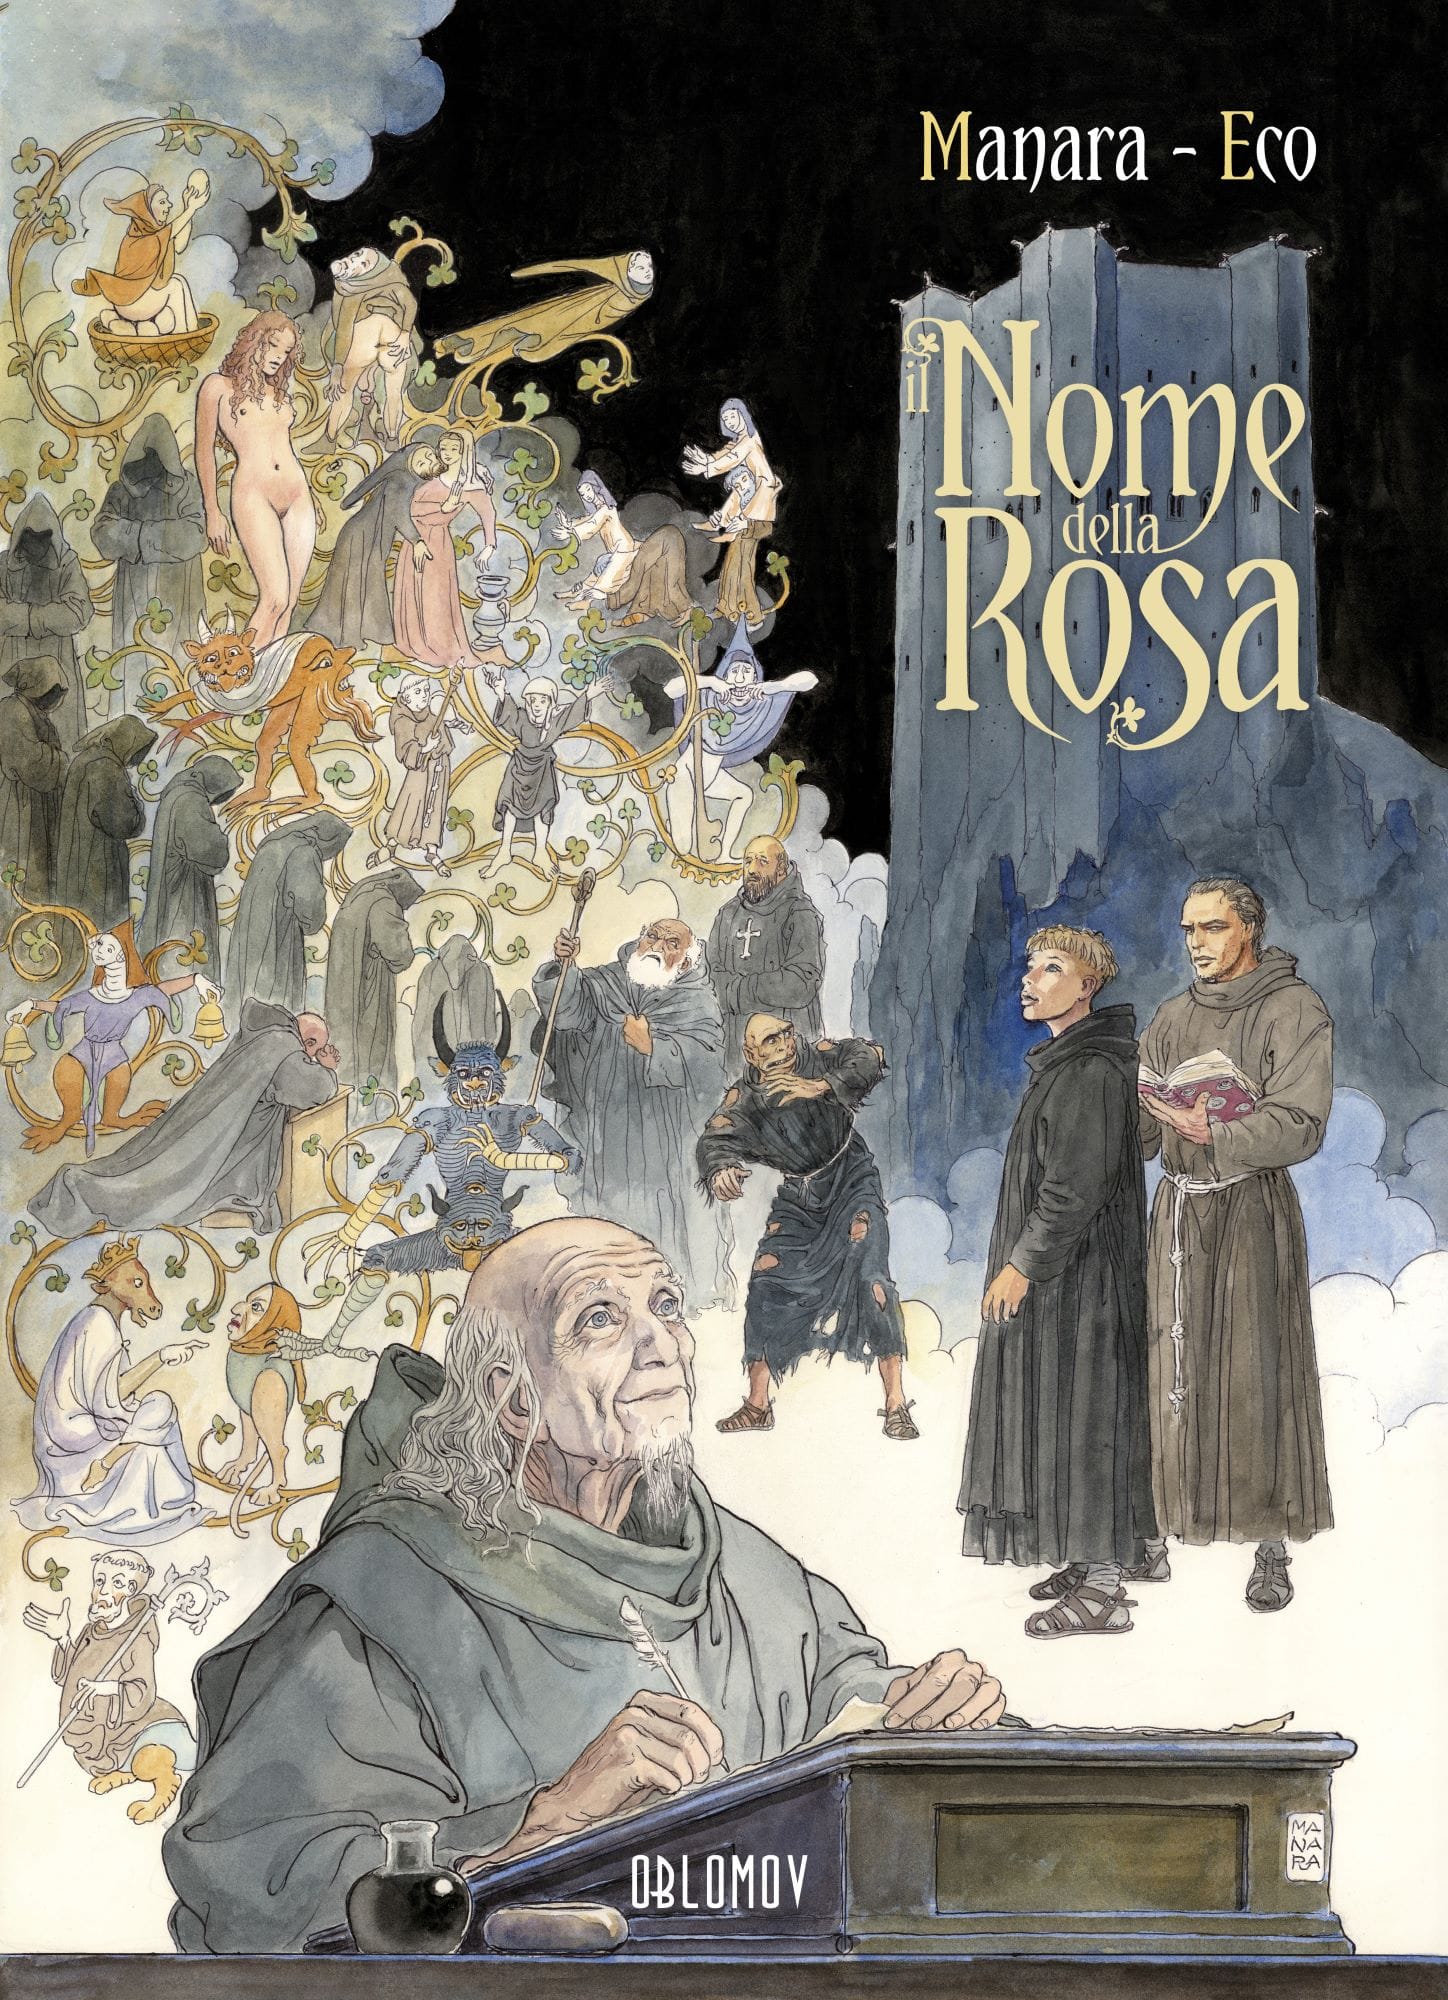 Milo Manara - Umberto Eco, Il Nome della Rosa, Oblomov, 72 pagine a colori, 20 euro